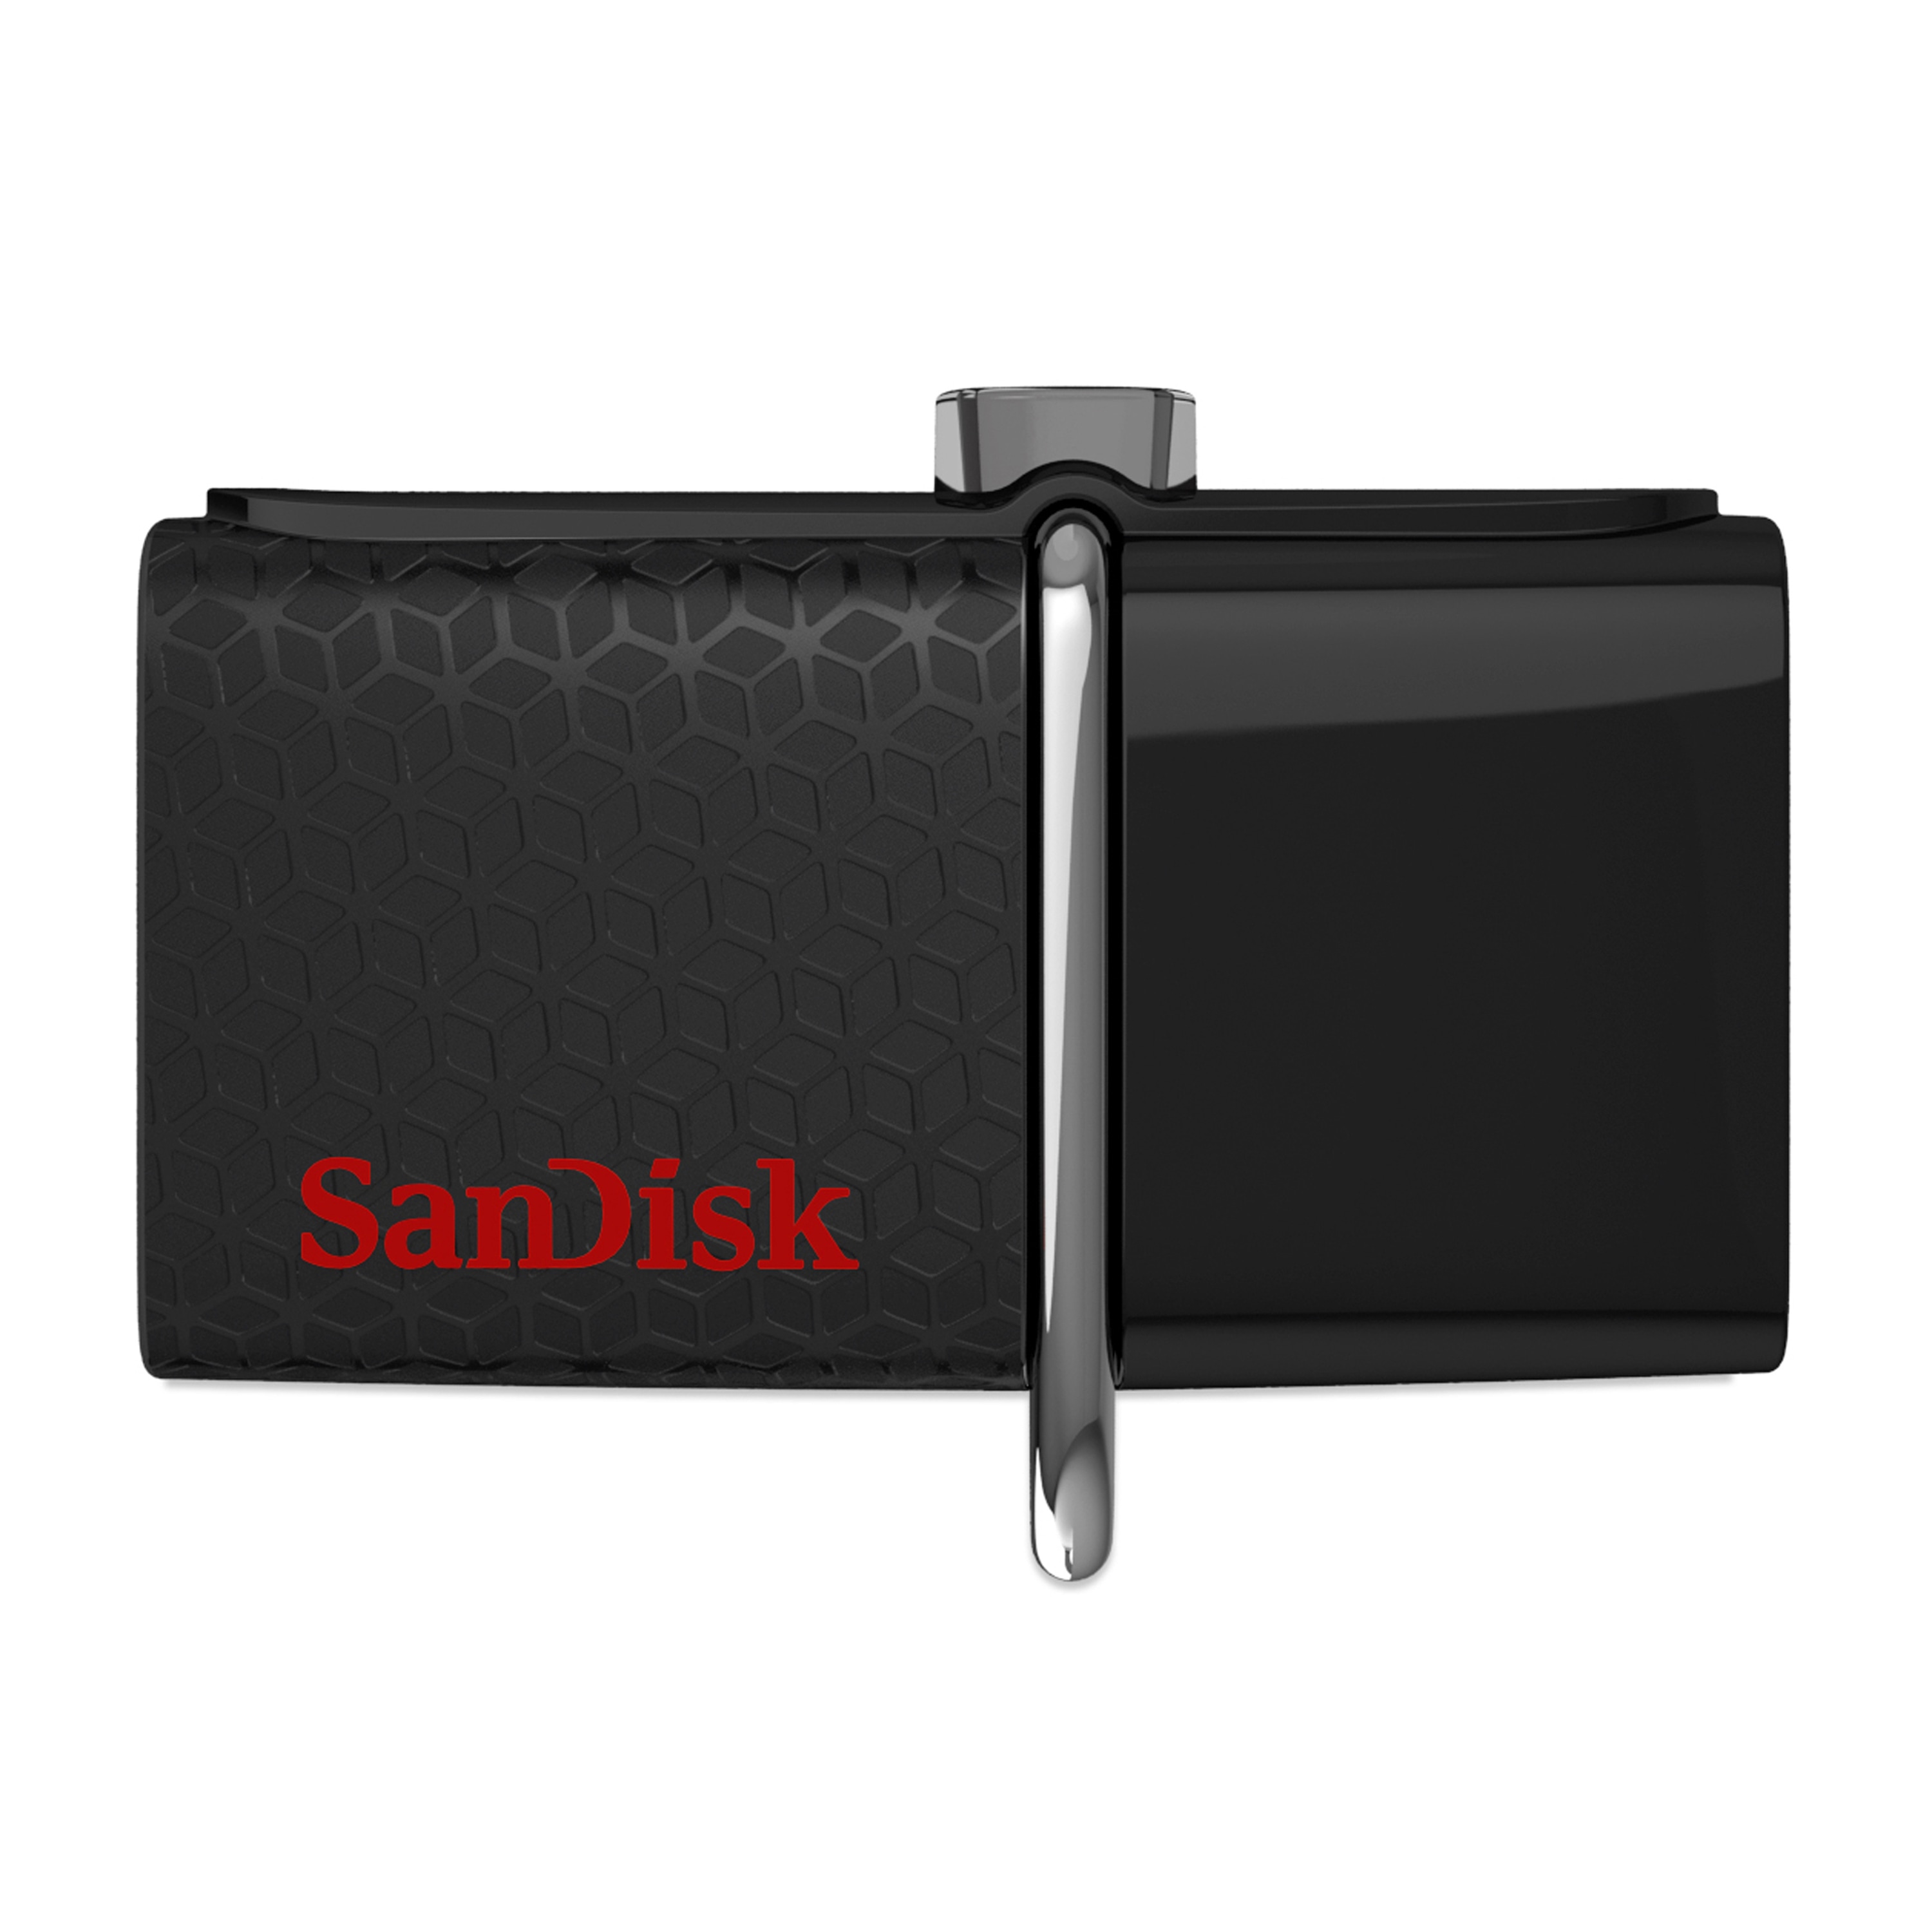 SANDISK Ultra Dual Drive 32 GB, USB 3.0 & microUSB, bis zu 150 MB/s, zur Übertragung von Dateien zwischen Smartphone und PC oder Mac